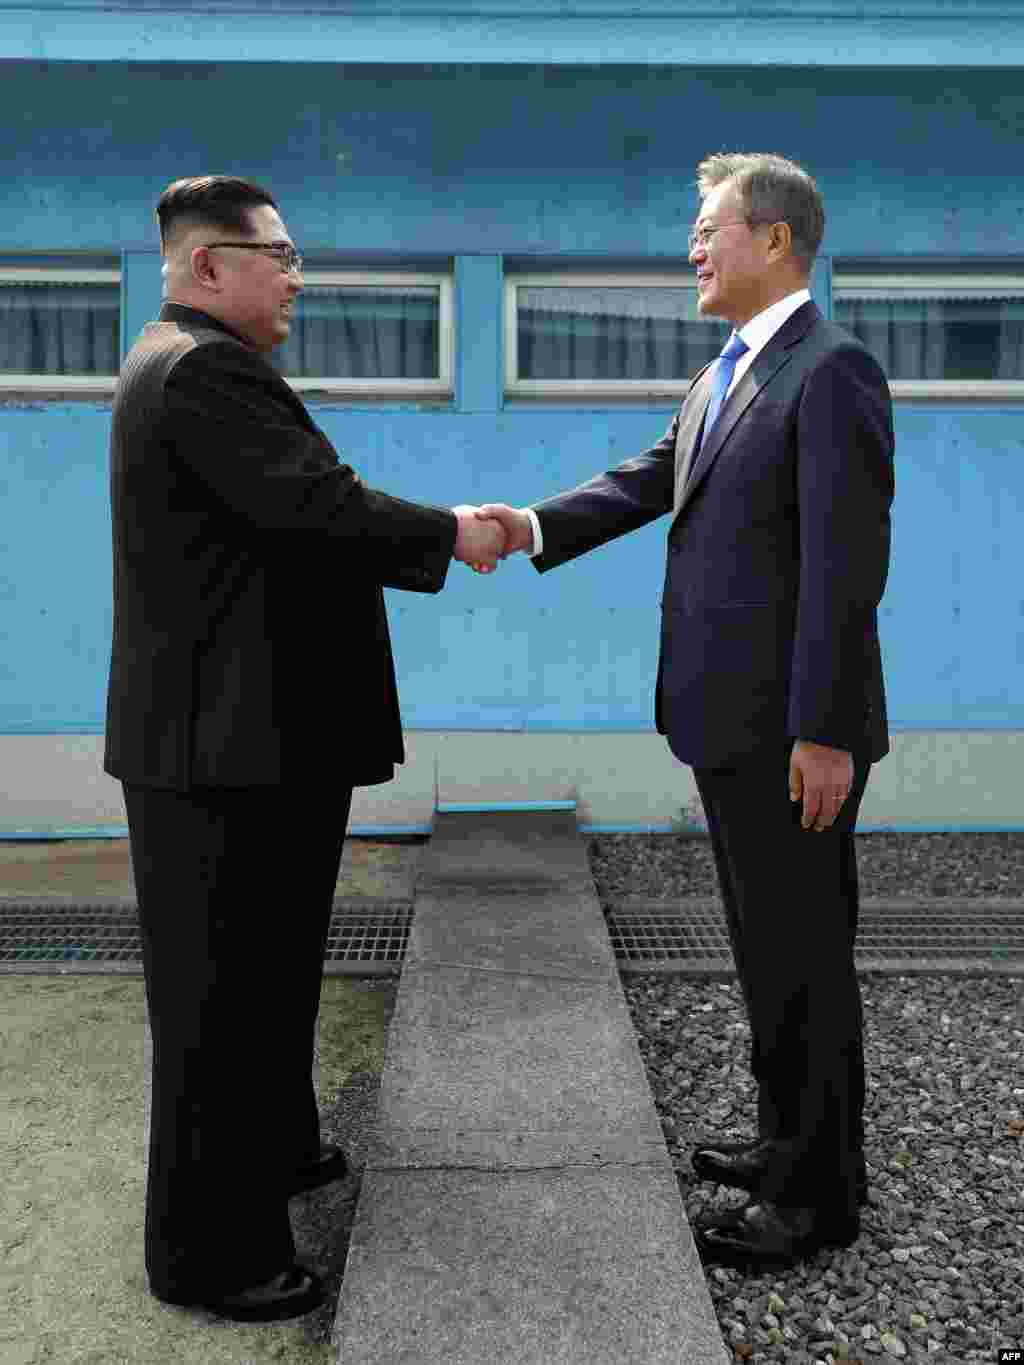 رهبران دو کره در منطقه صفر مرزی و حائل بین دو کشور با هم دیدار کردند.